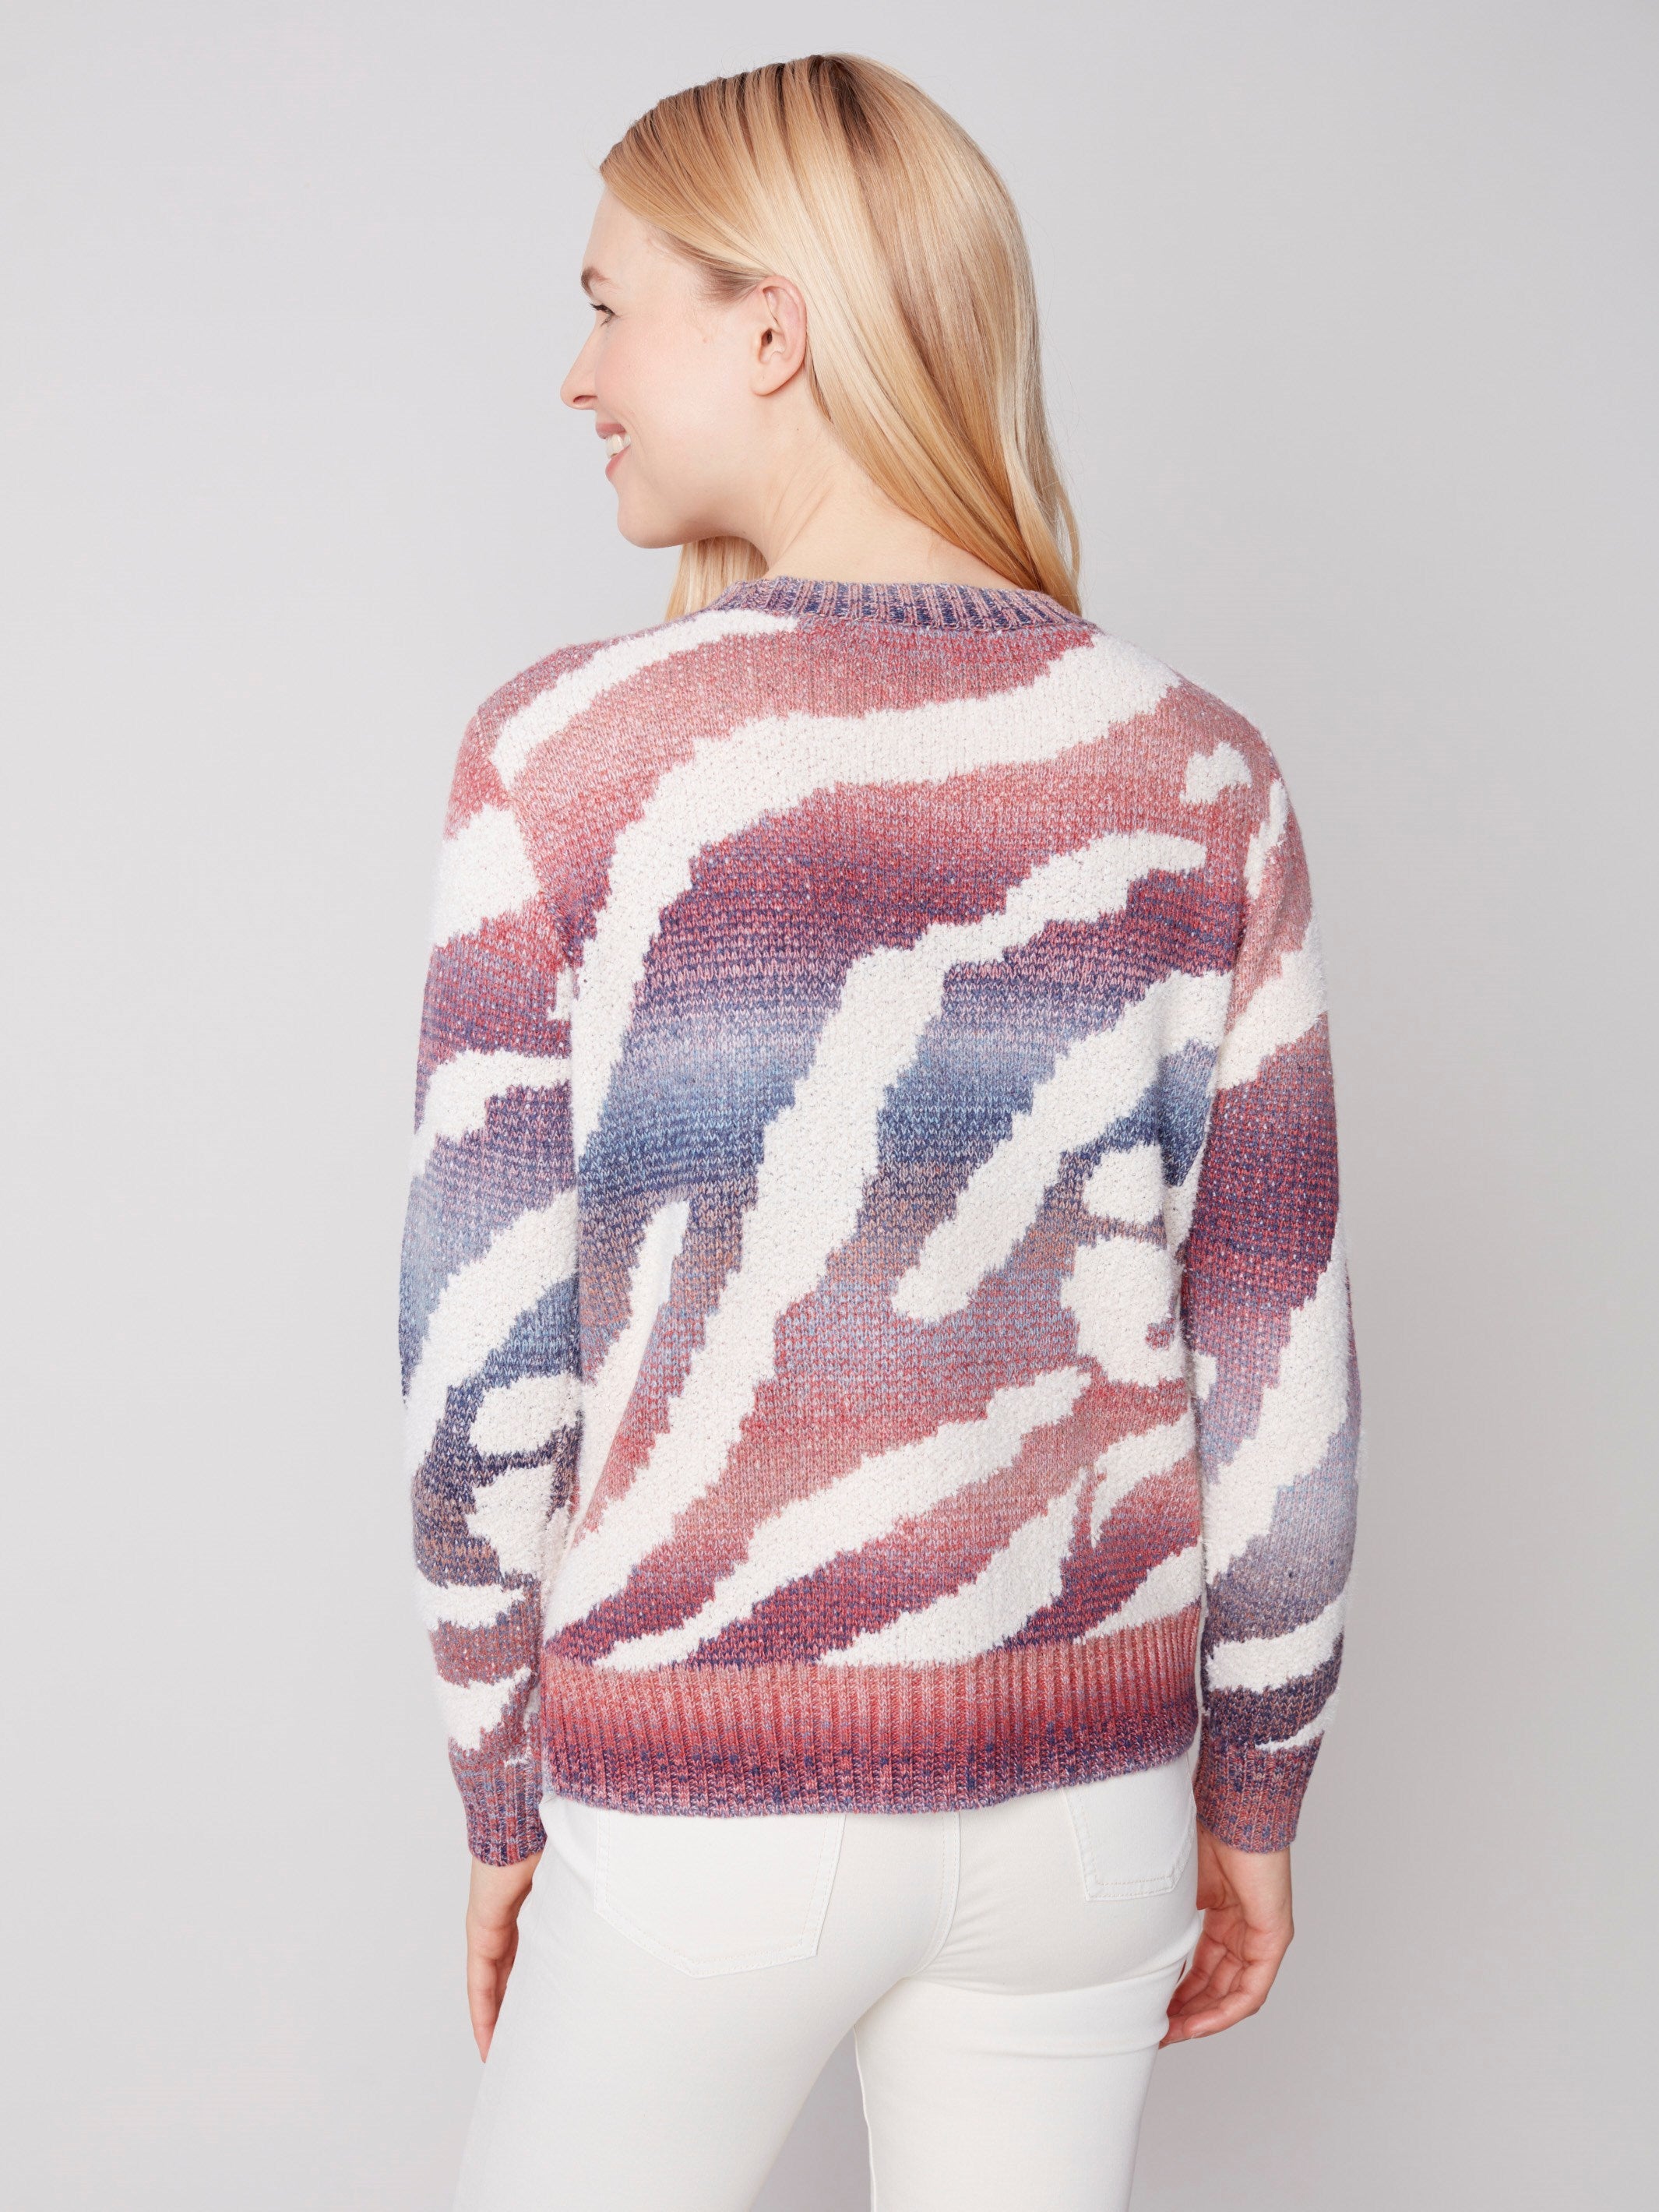 Space Dye Knit Sweater - Ruby